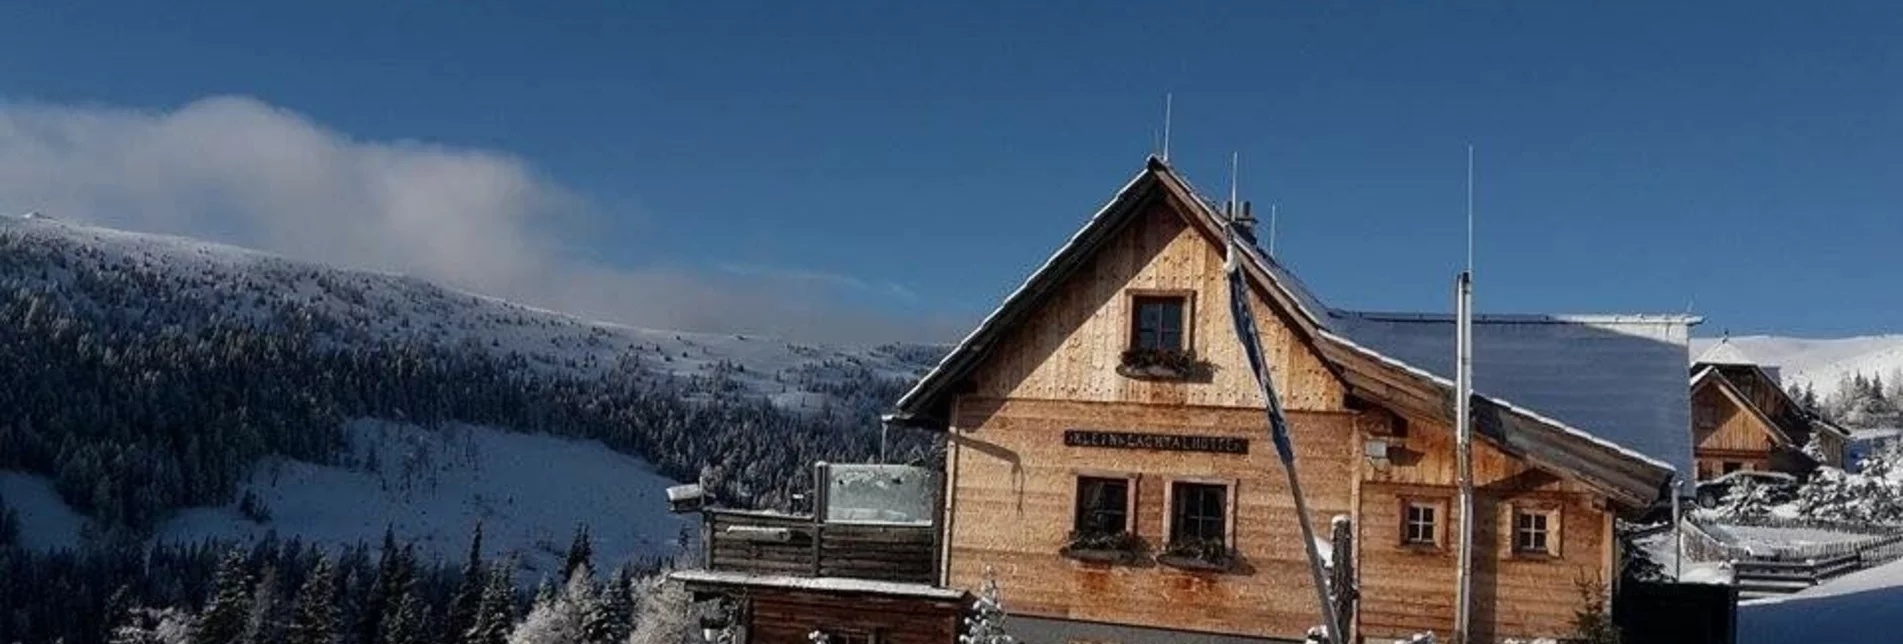 Winterwandern Kleinlachtalhütte und retour - Touren-Impression #1 | © Tourismusverband Region Murau